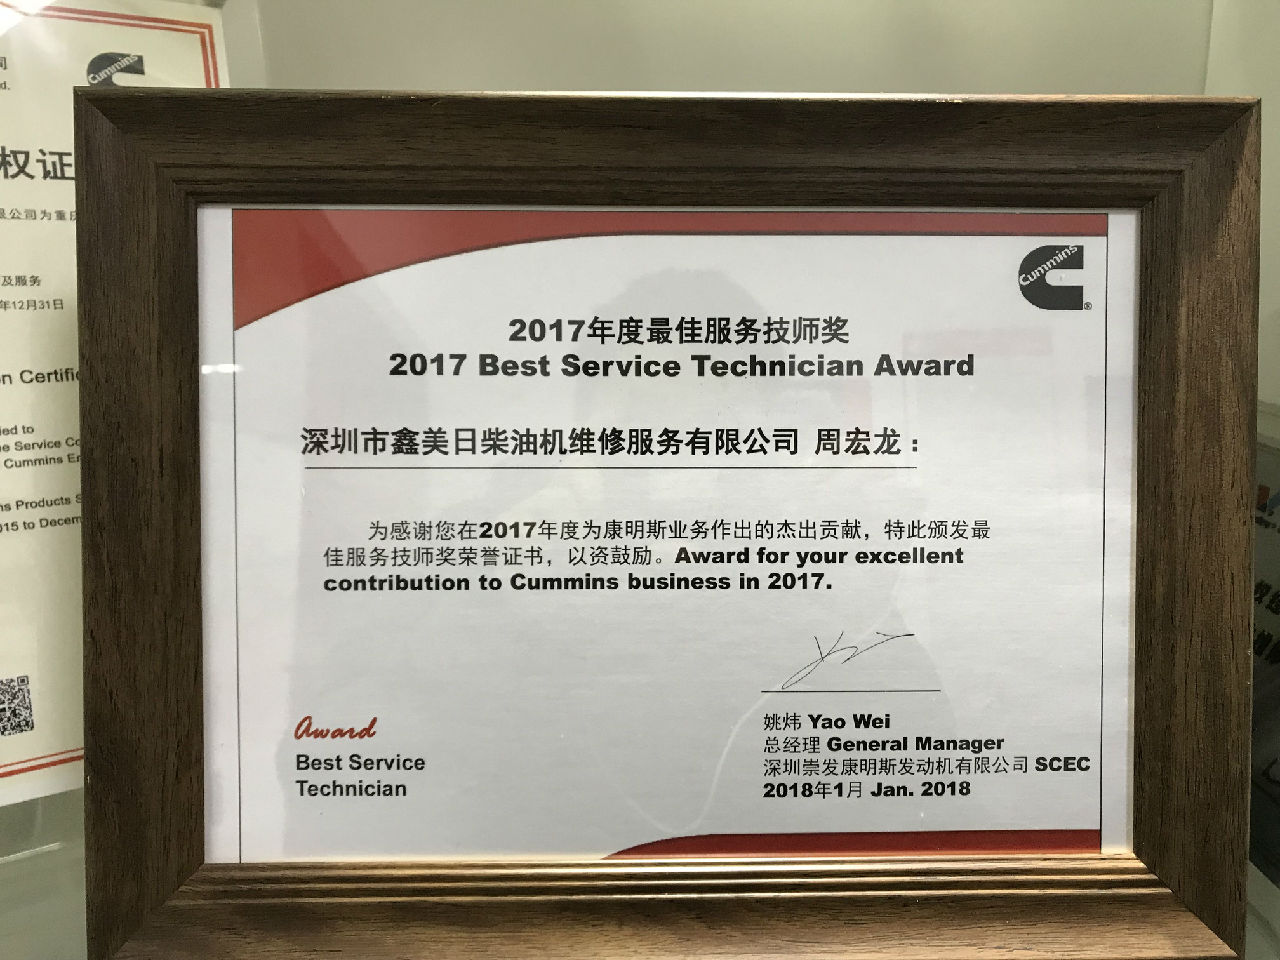 2017年度最佳服務技師獎 周宏龍 _c